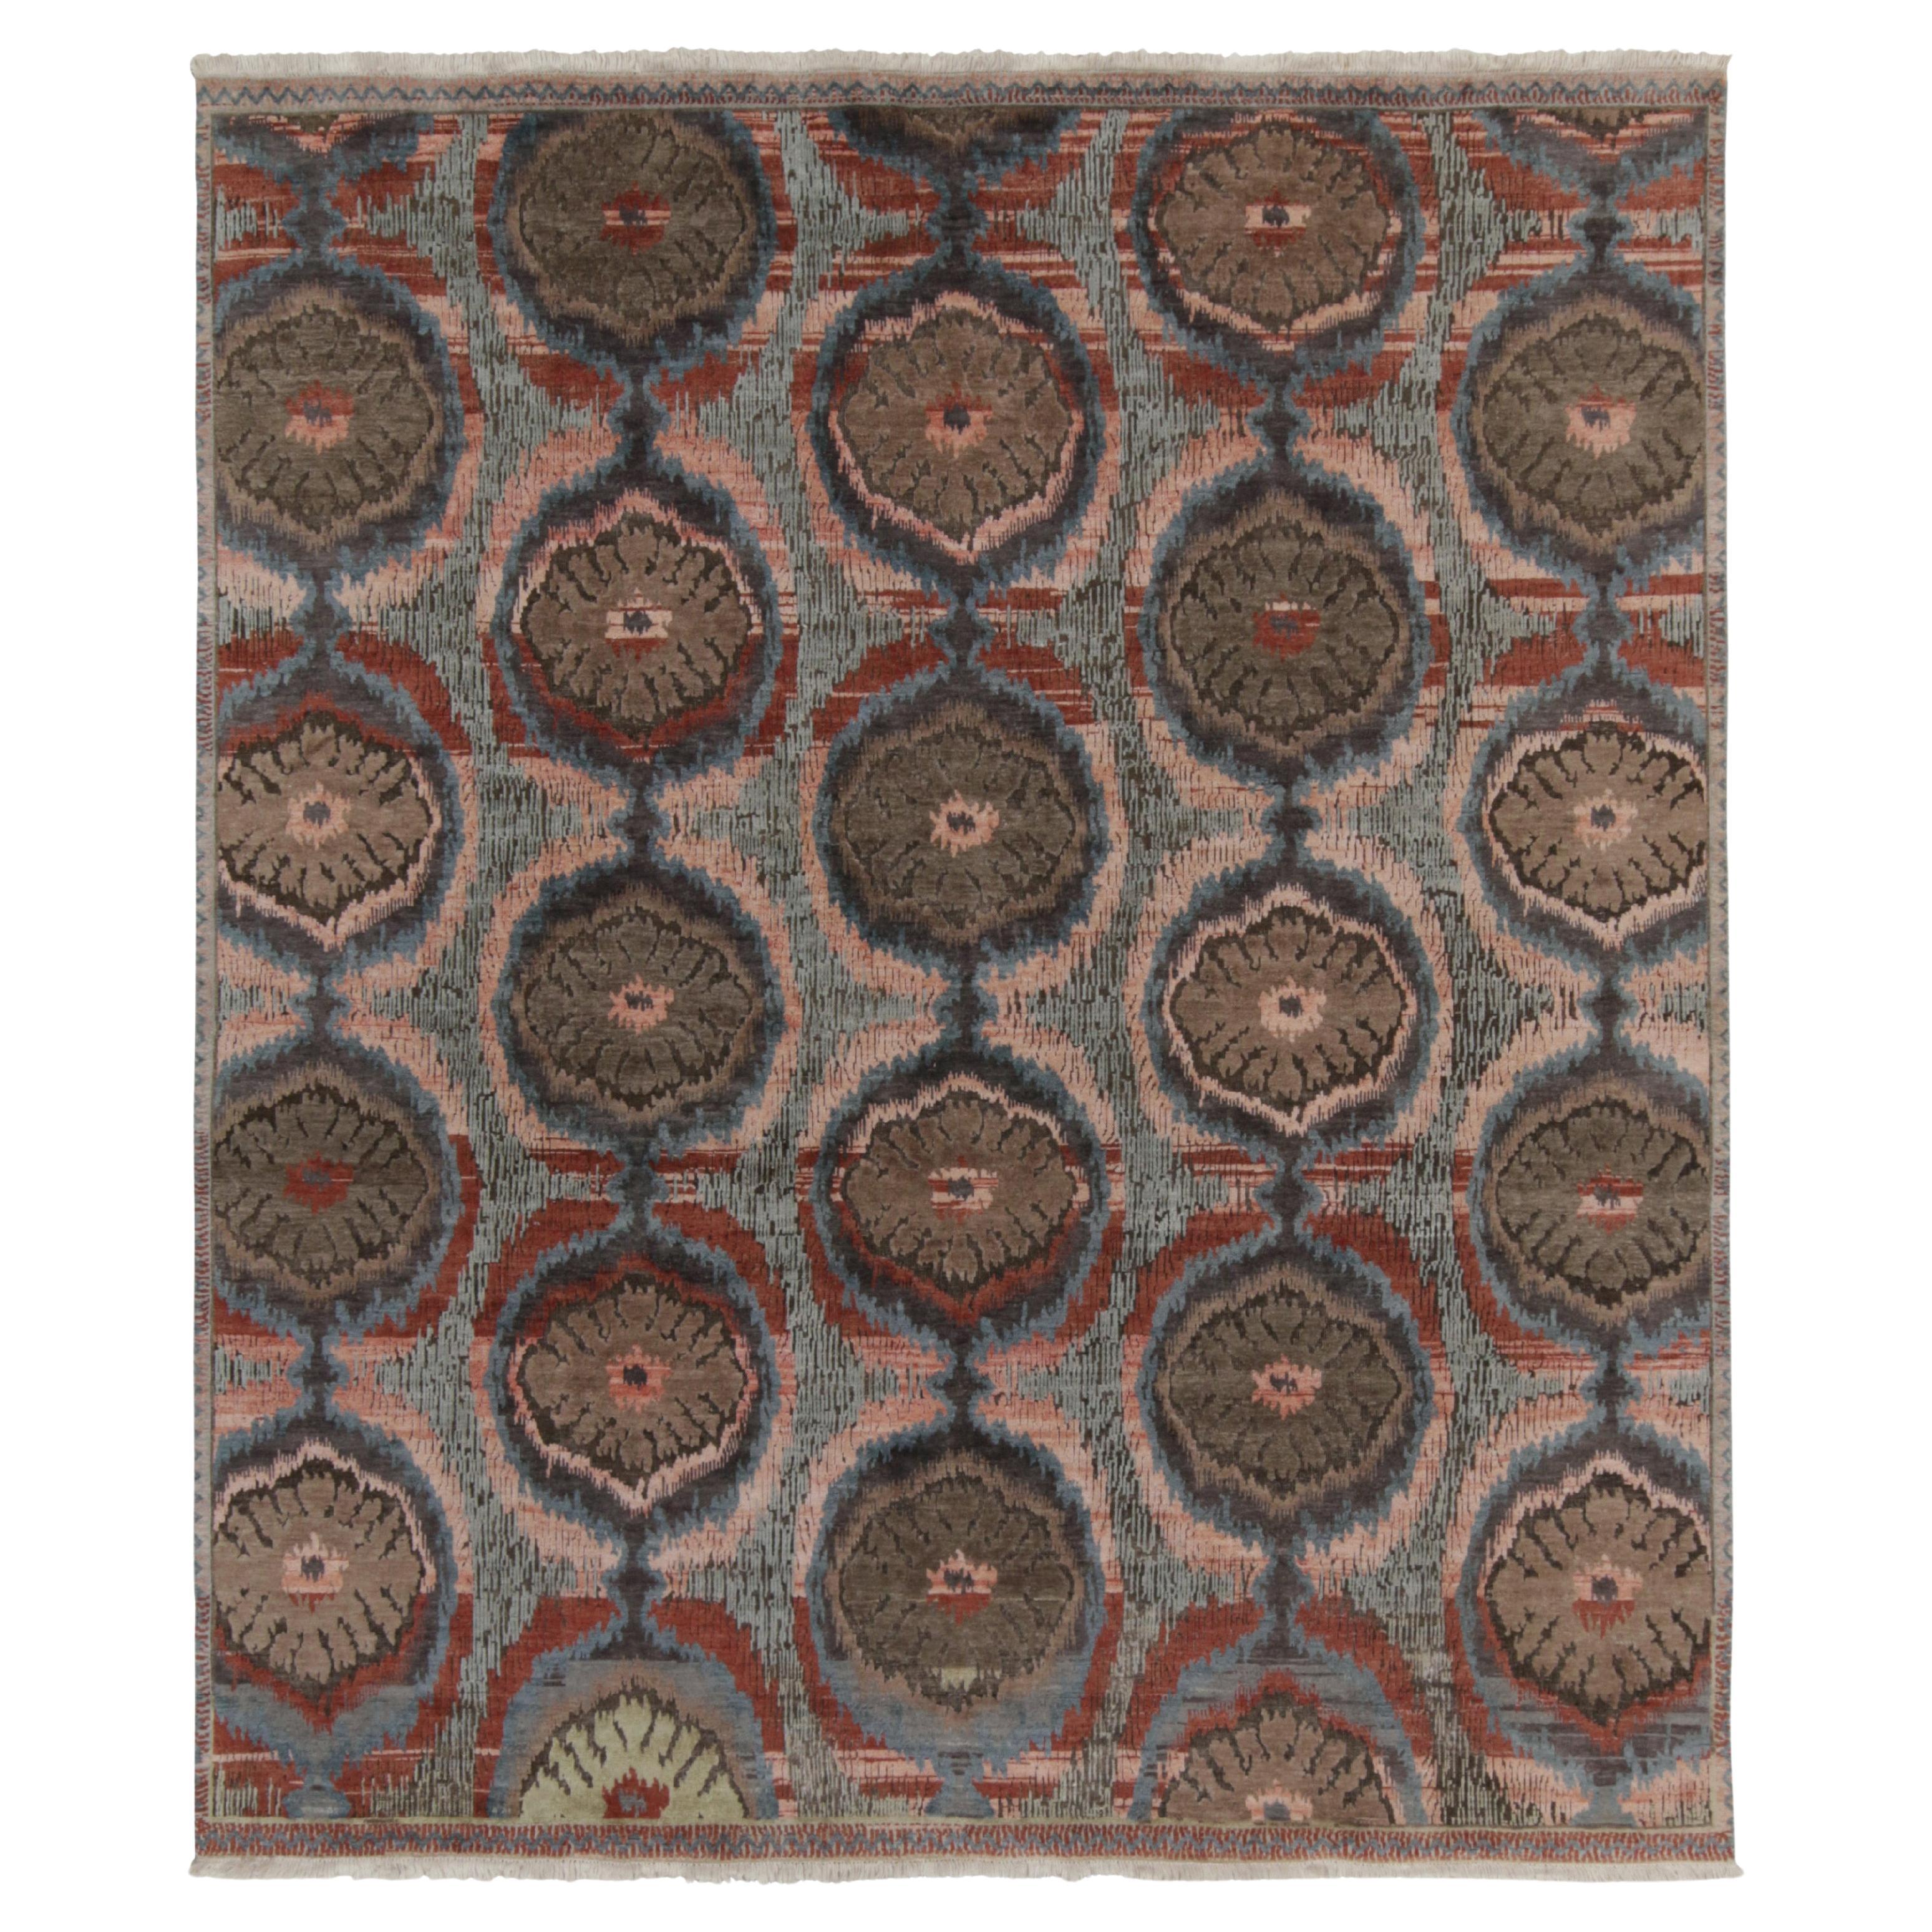 Rug & Kilims Classic-Teppich in rosa, blauen und beige-braunen Ikats-Mustern